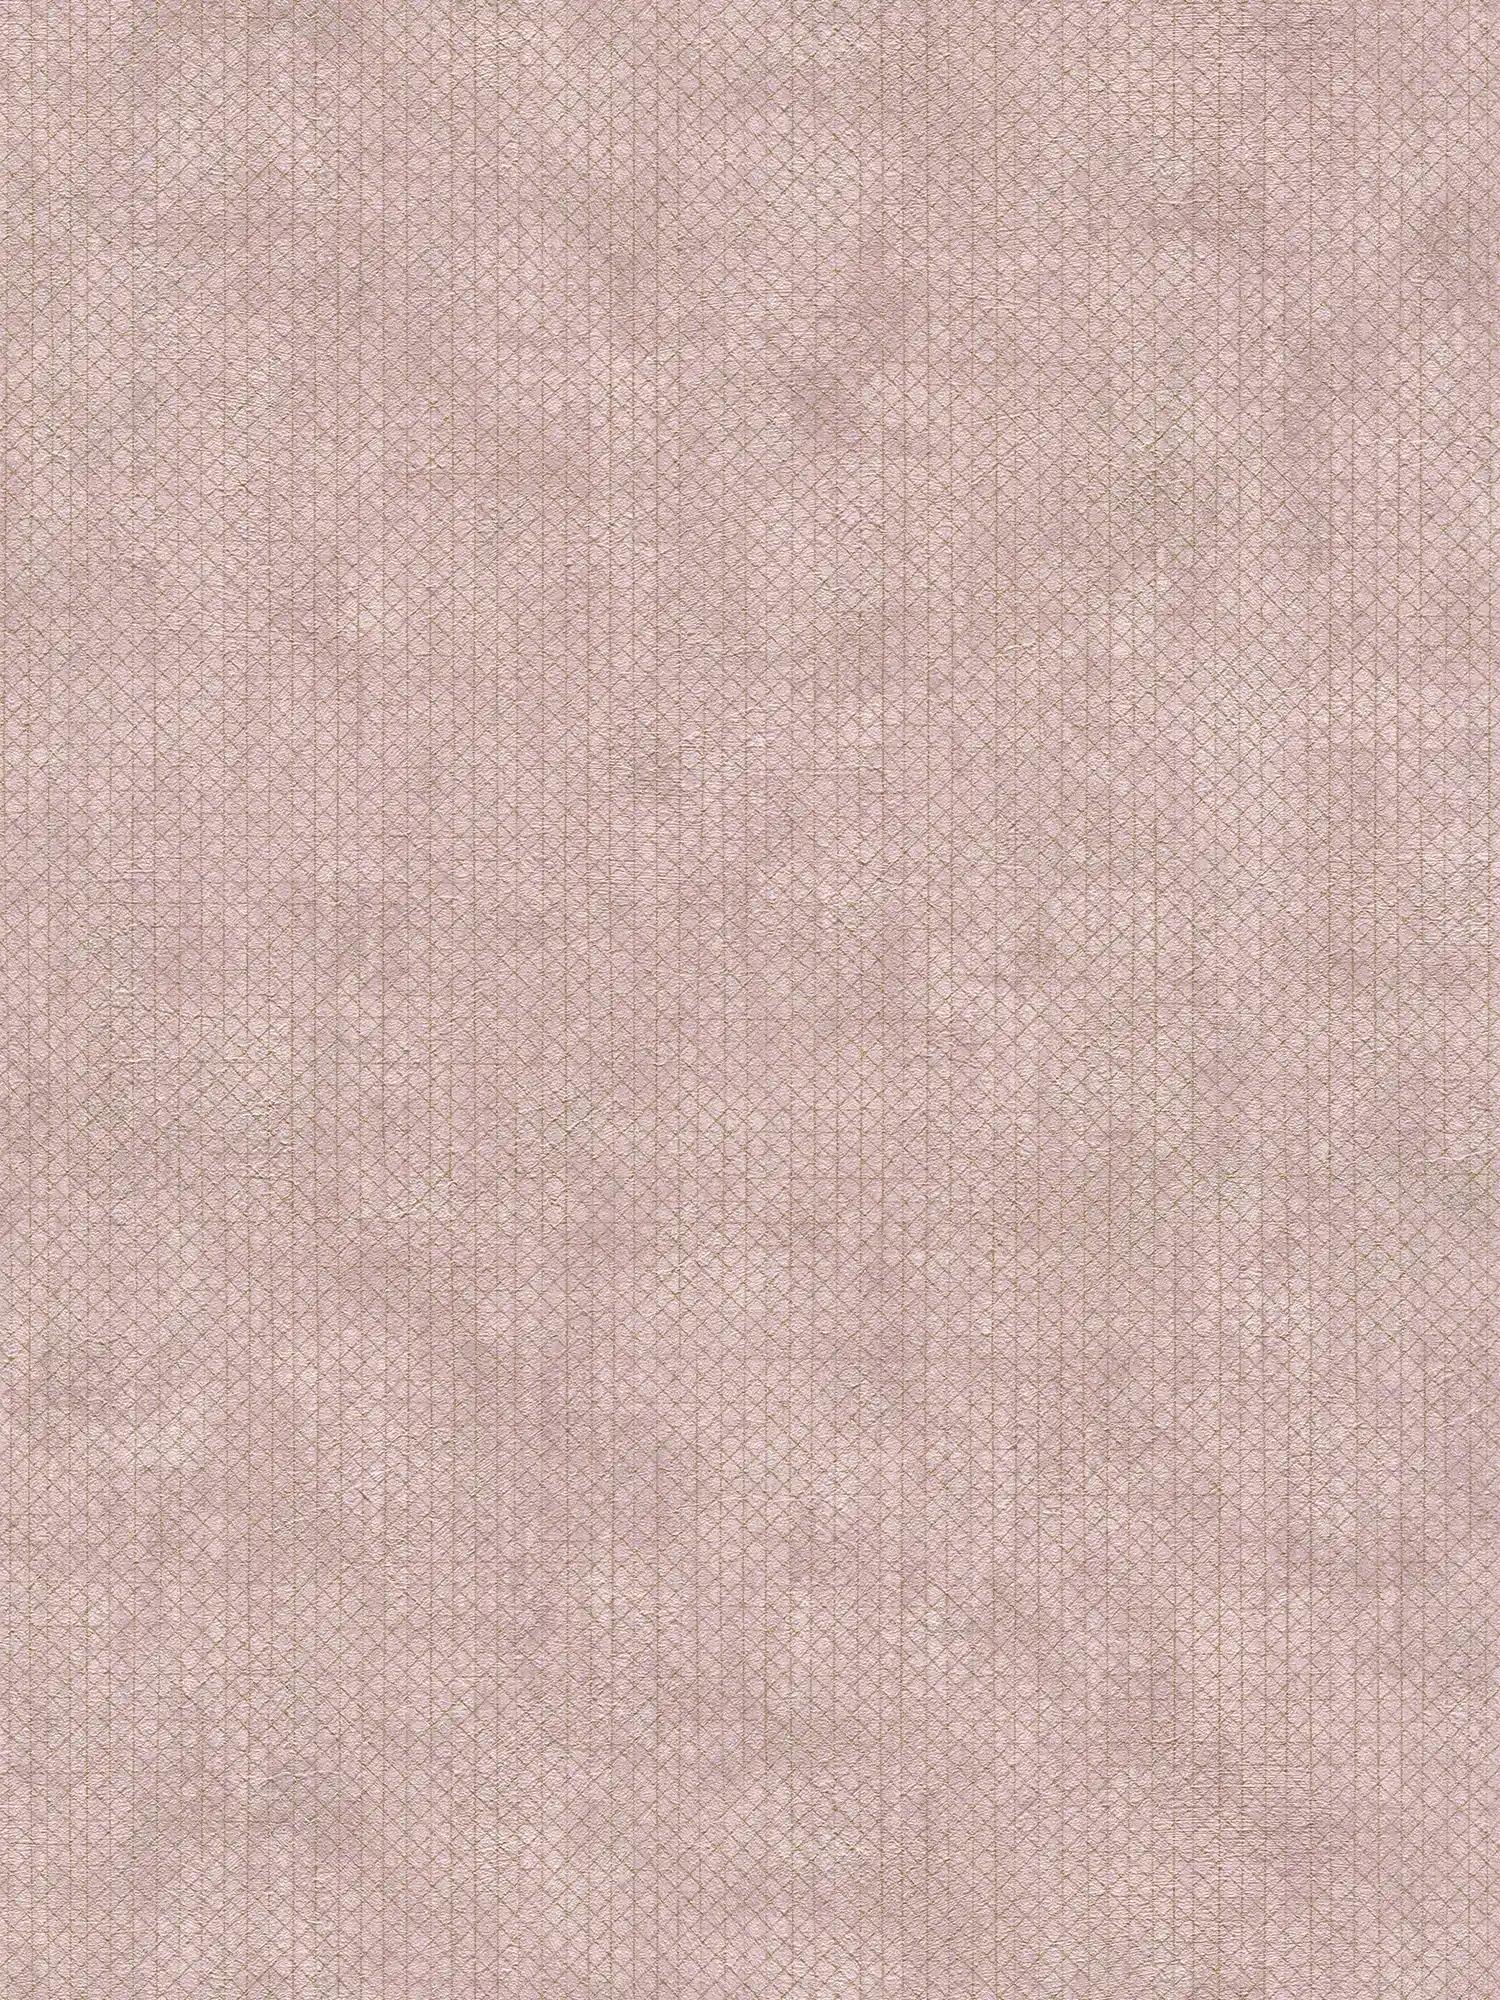 Carta da parati rosa antico con motivo a linee dorate - metallizzata, rosa
